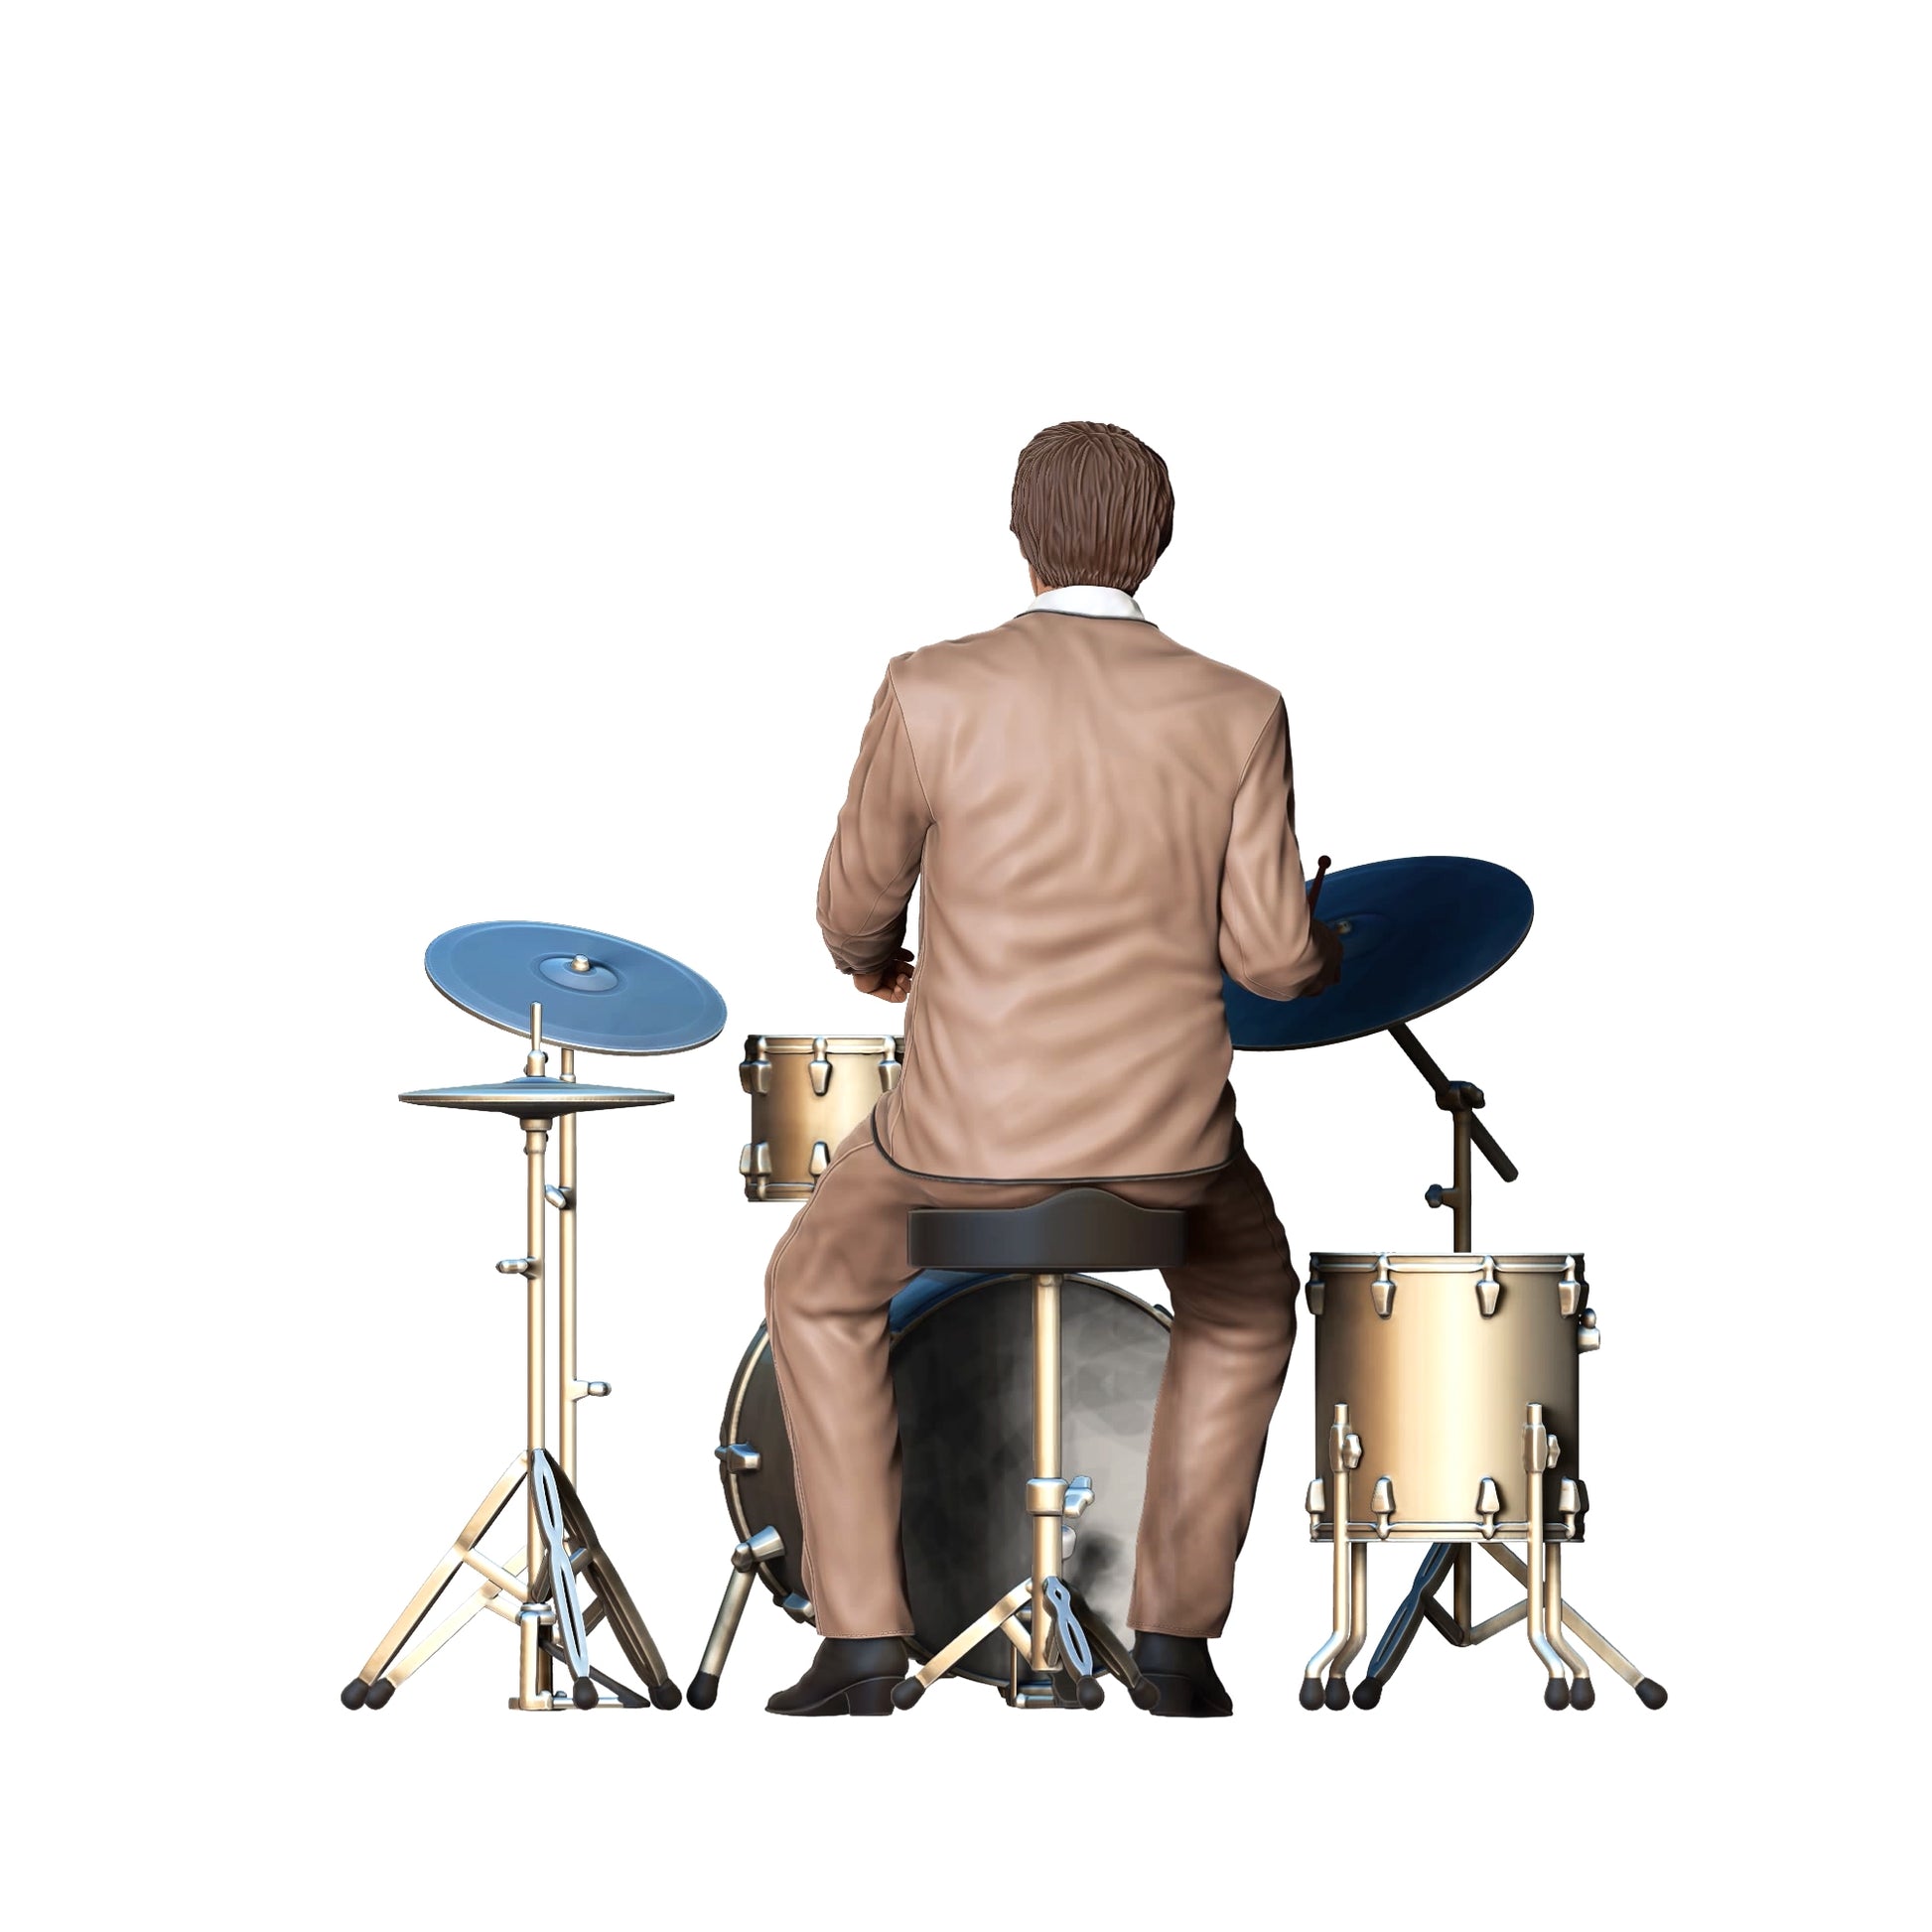 Produktfoto  0: Musiker - Mann am Schlagzeug